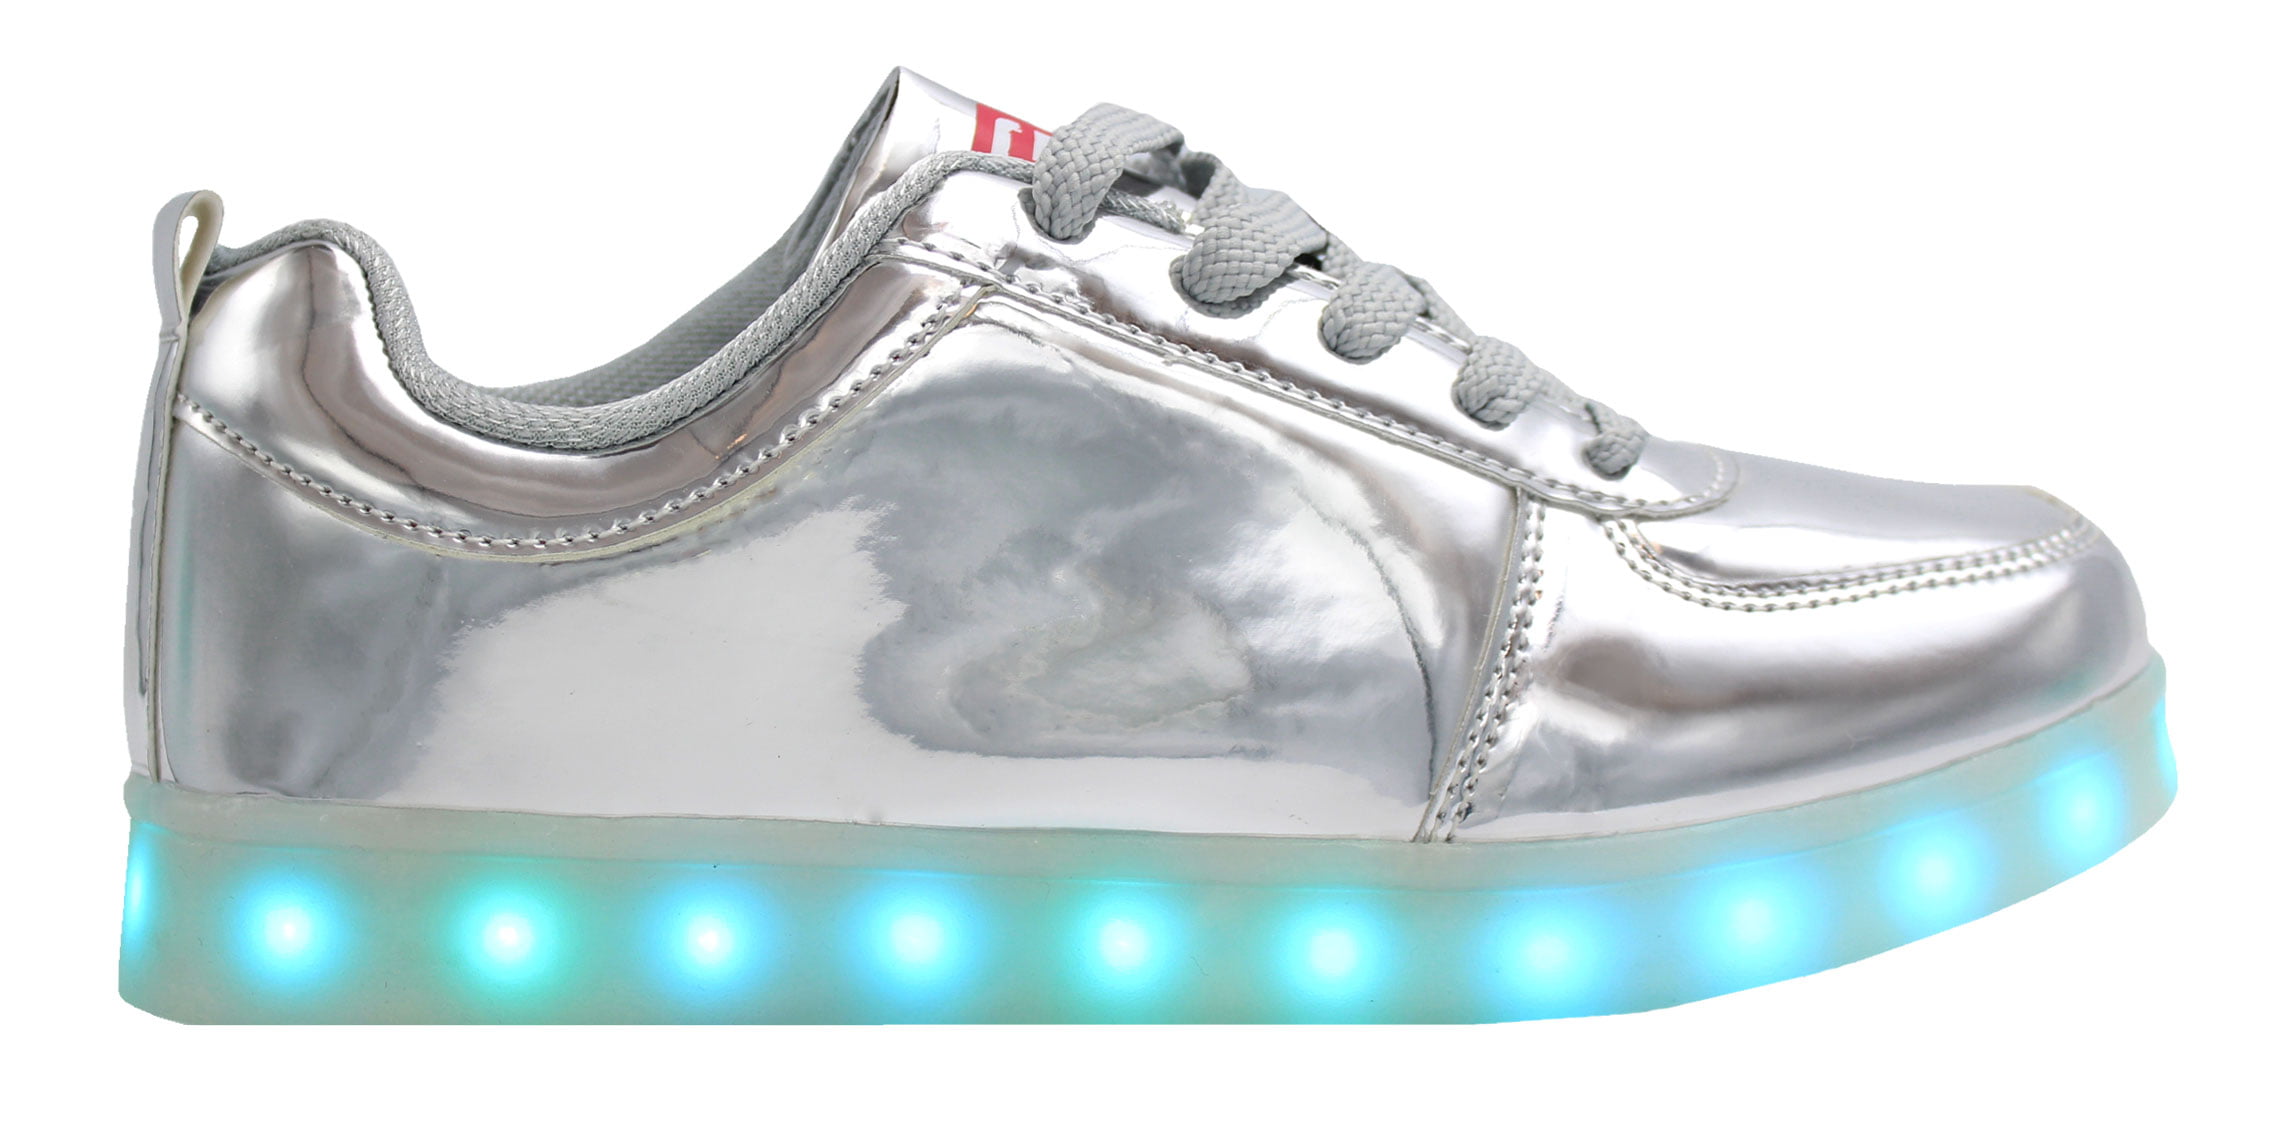 light up sneakers walmart